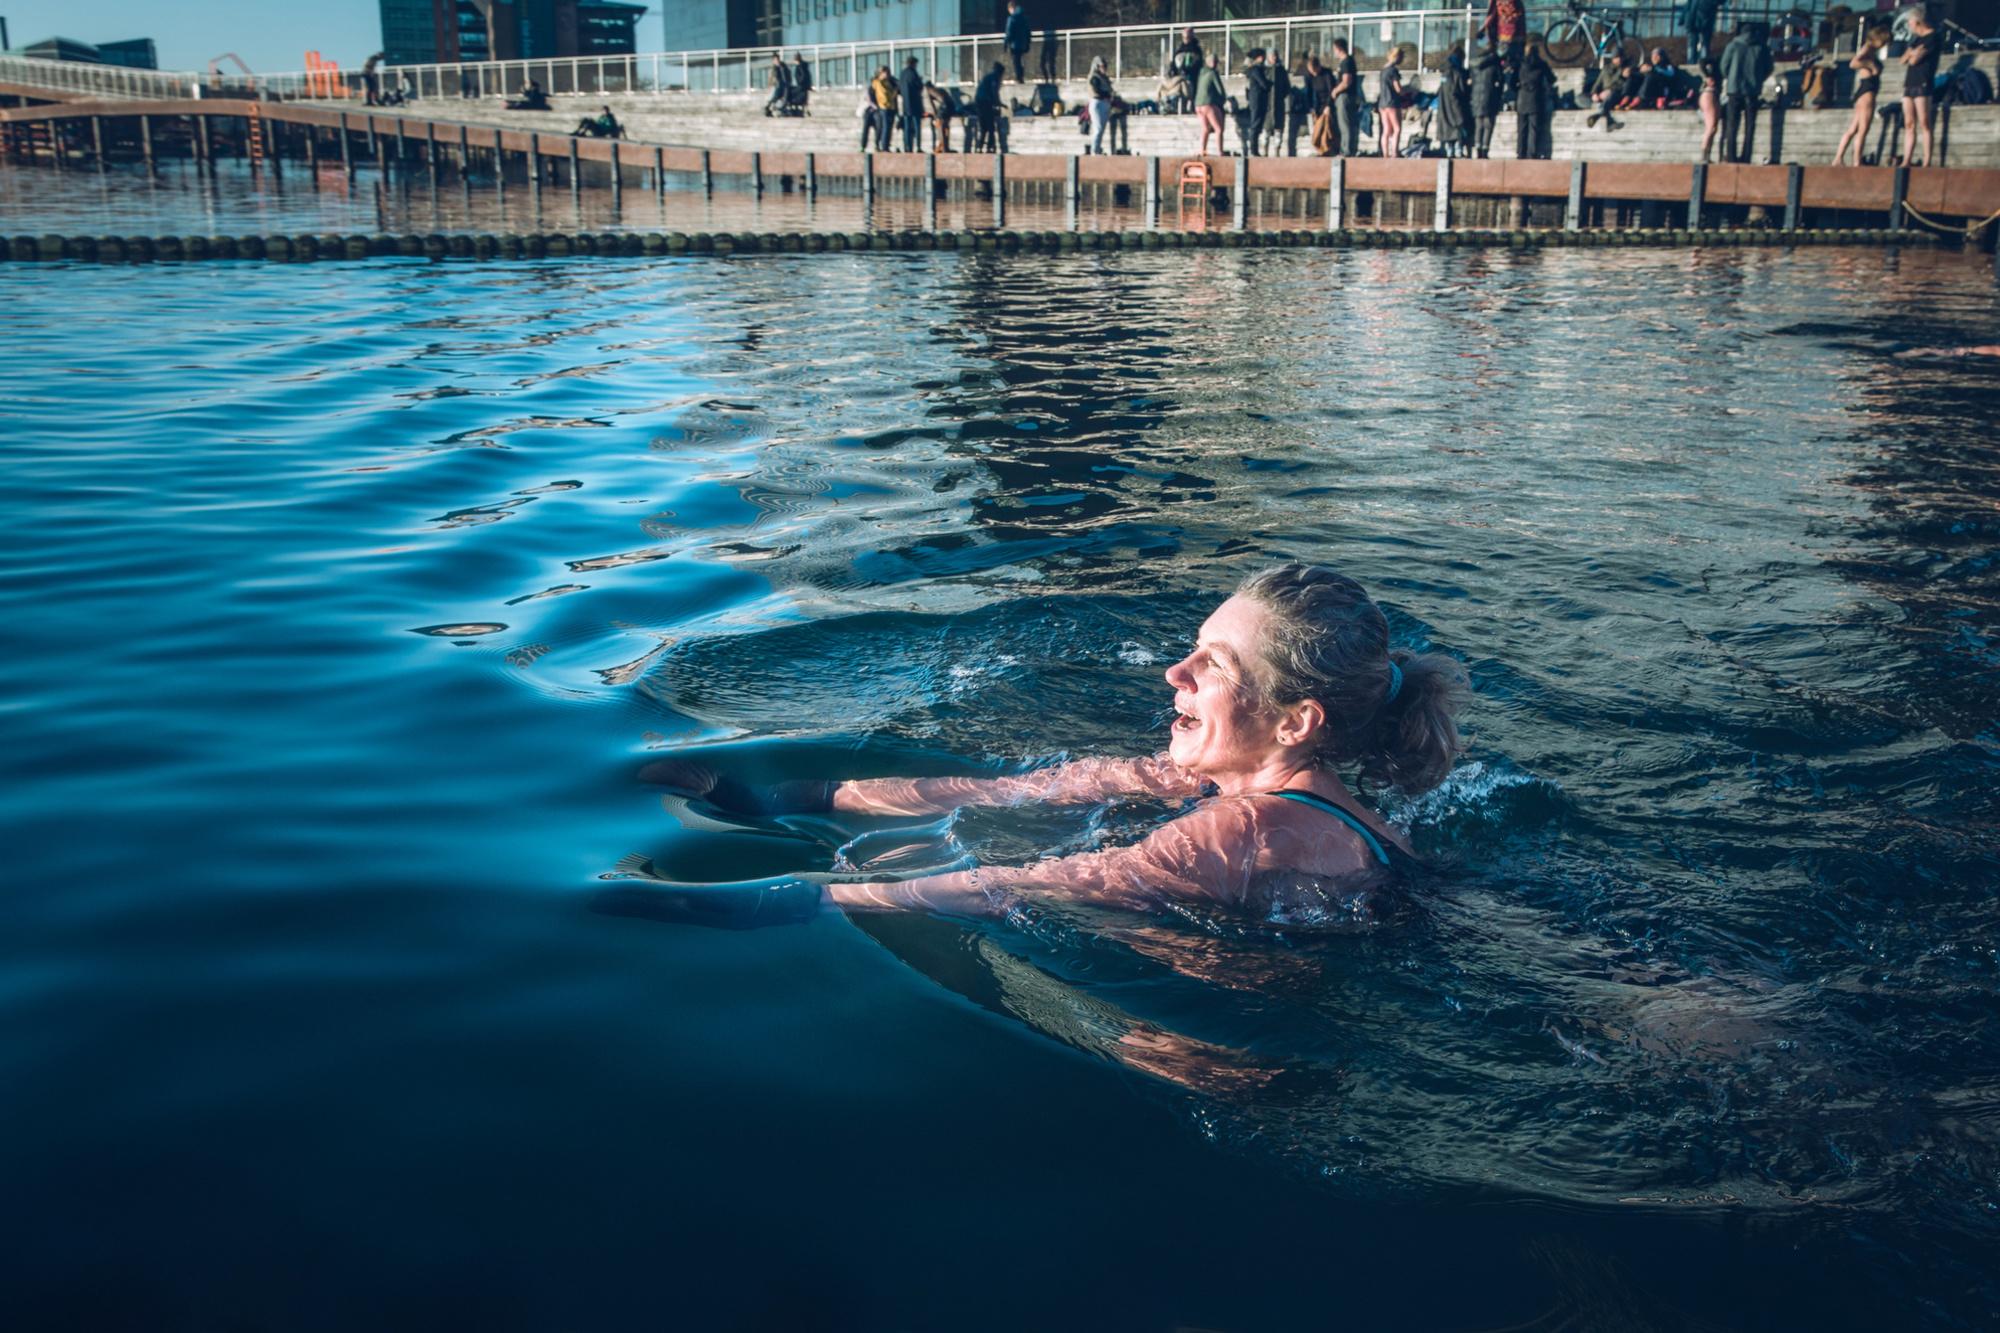 Winterzwemmen is heel populair in steden zoals Kopenhagen (hier afgebeeld) en Genève